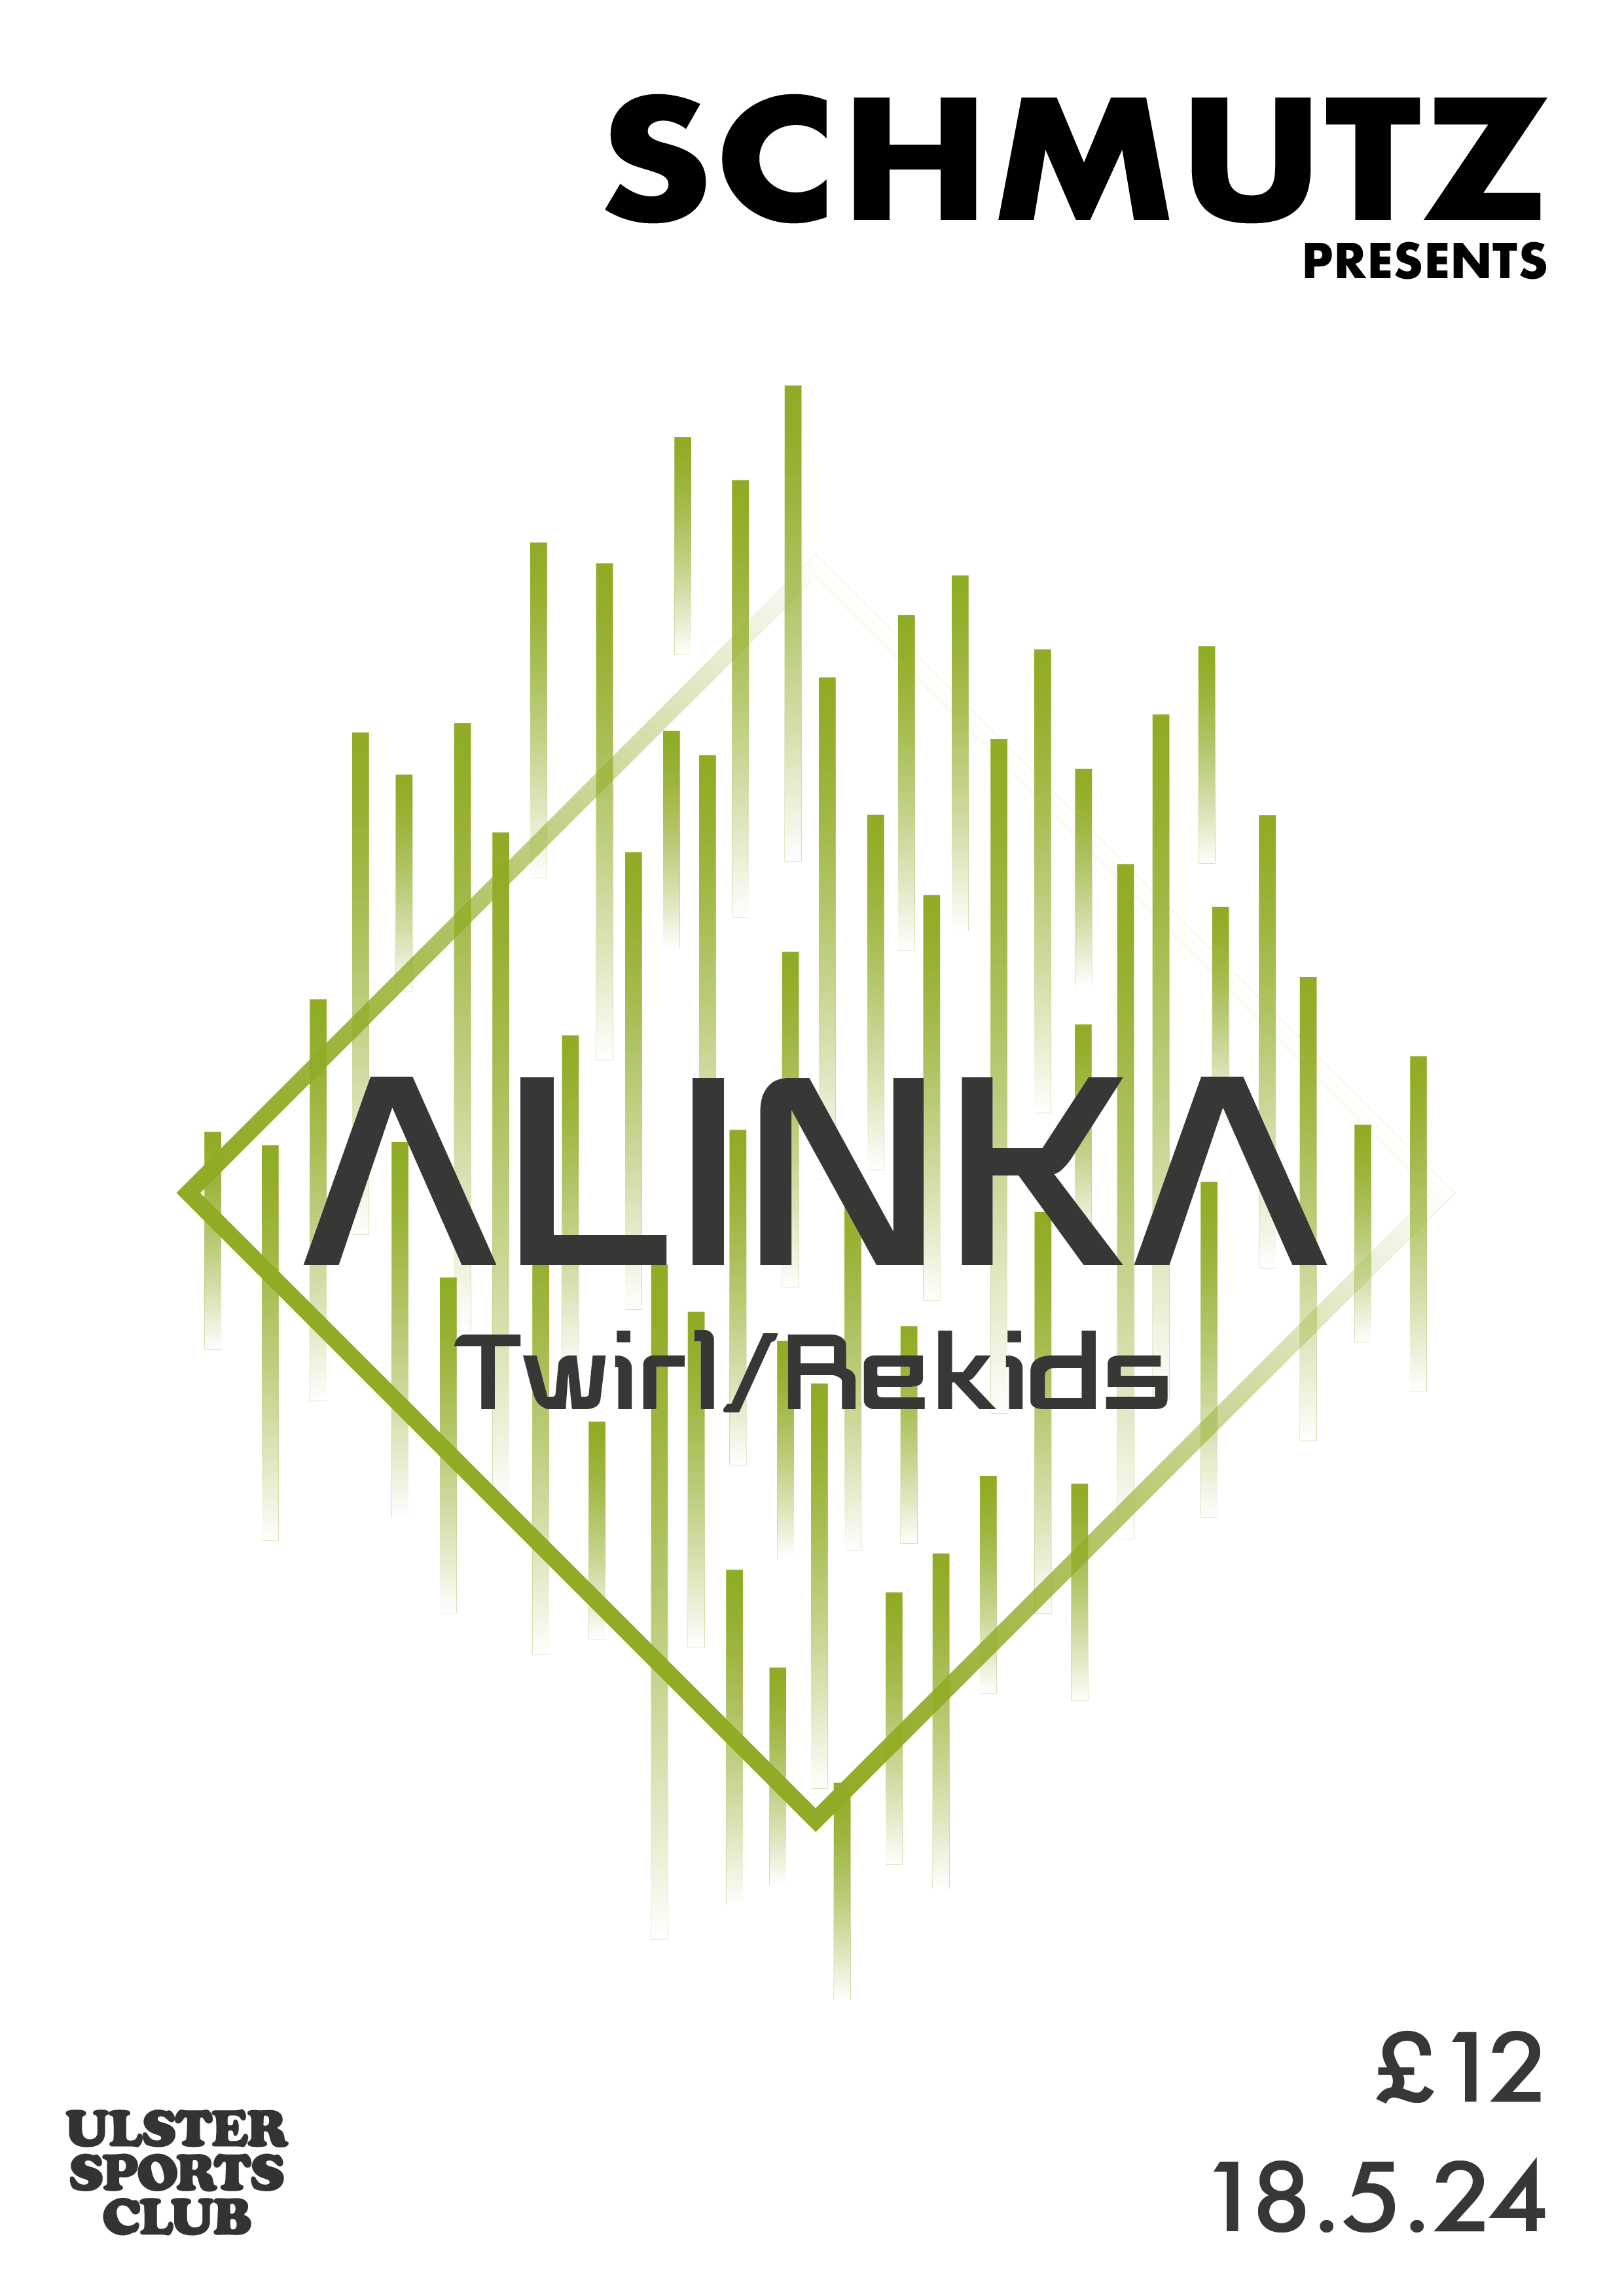 Schmutz Presents Alinka (Rekids/Twirl) - フライヤー裏